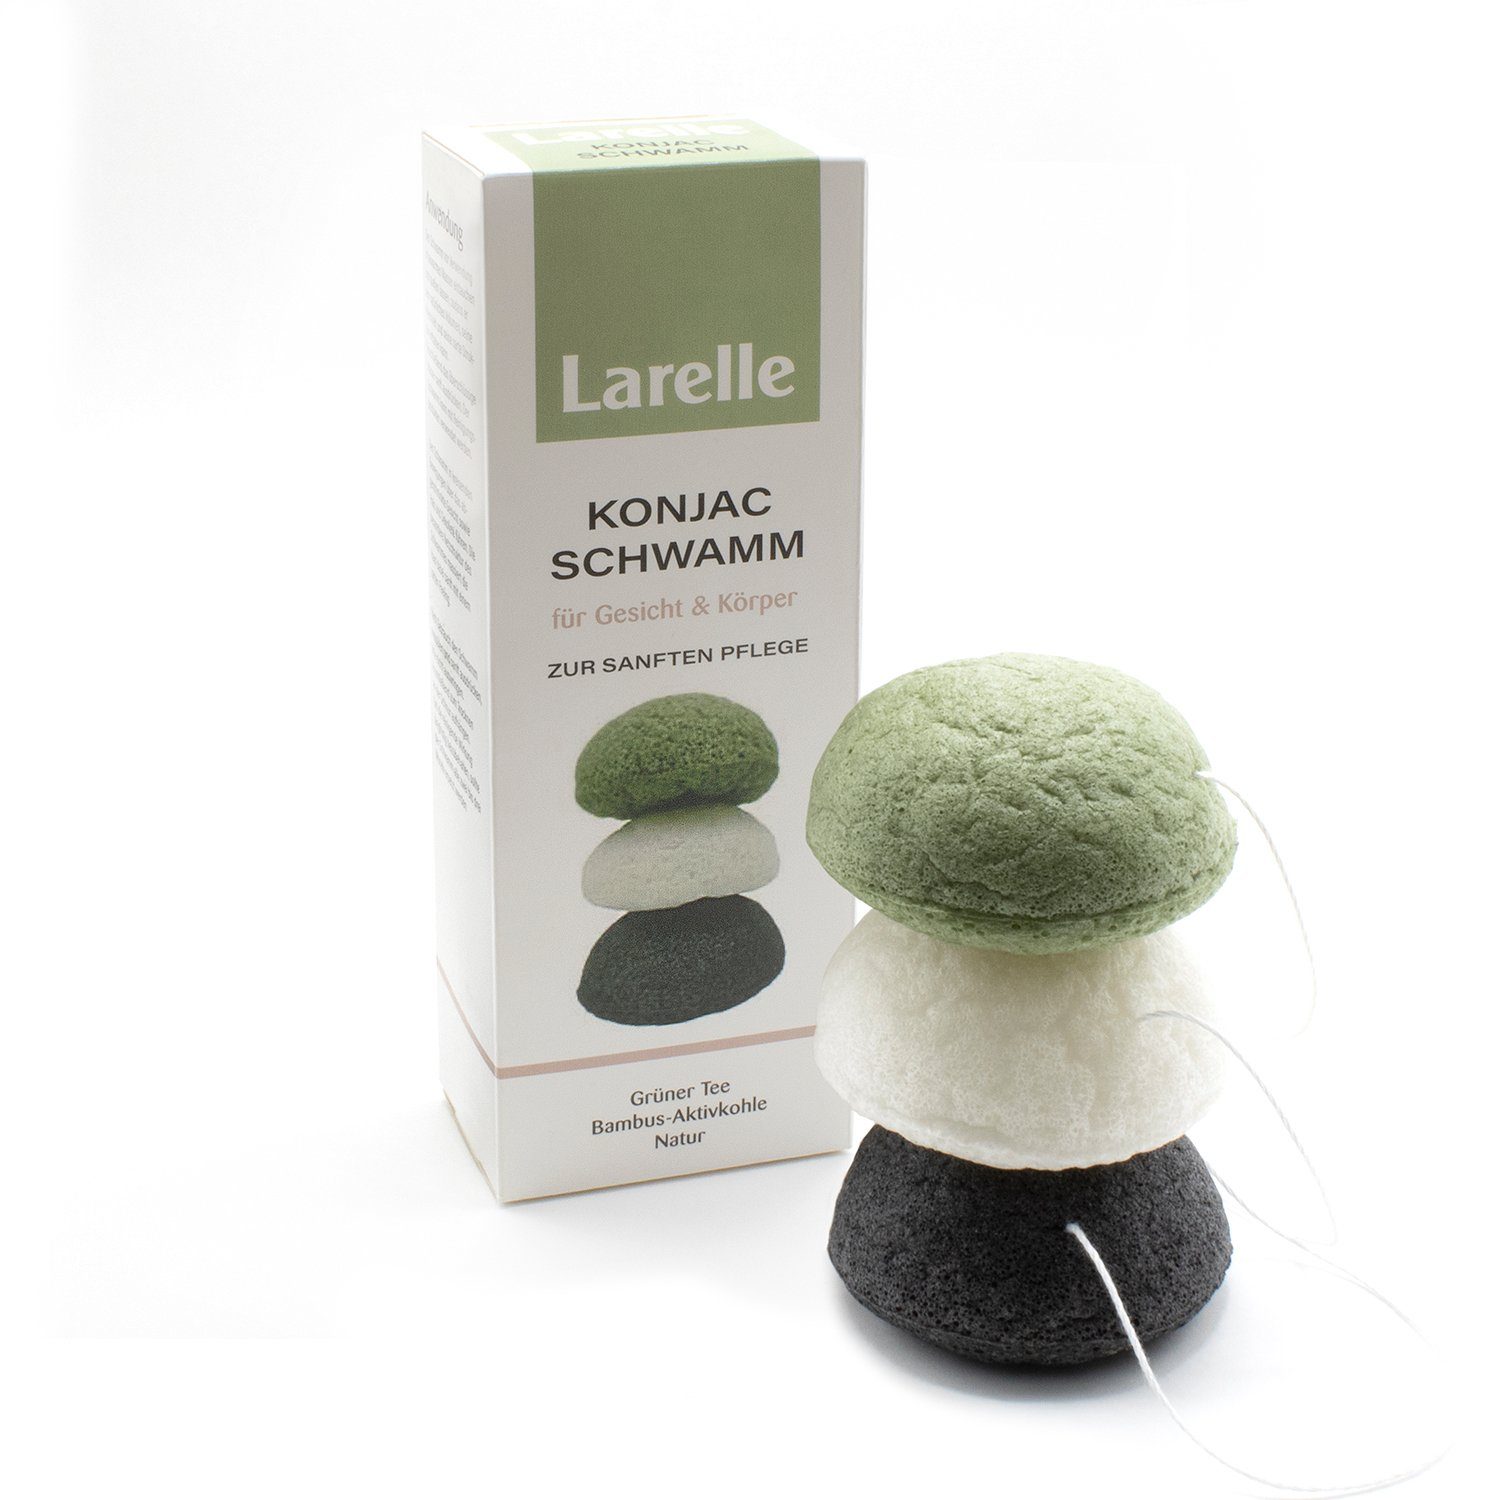 Larelle Make-up natürliche Schwamm Set für Larelle Schwamm Konjac 3er Gesichtsreinigung